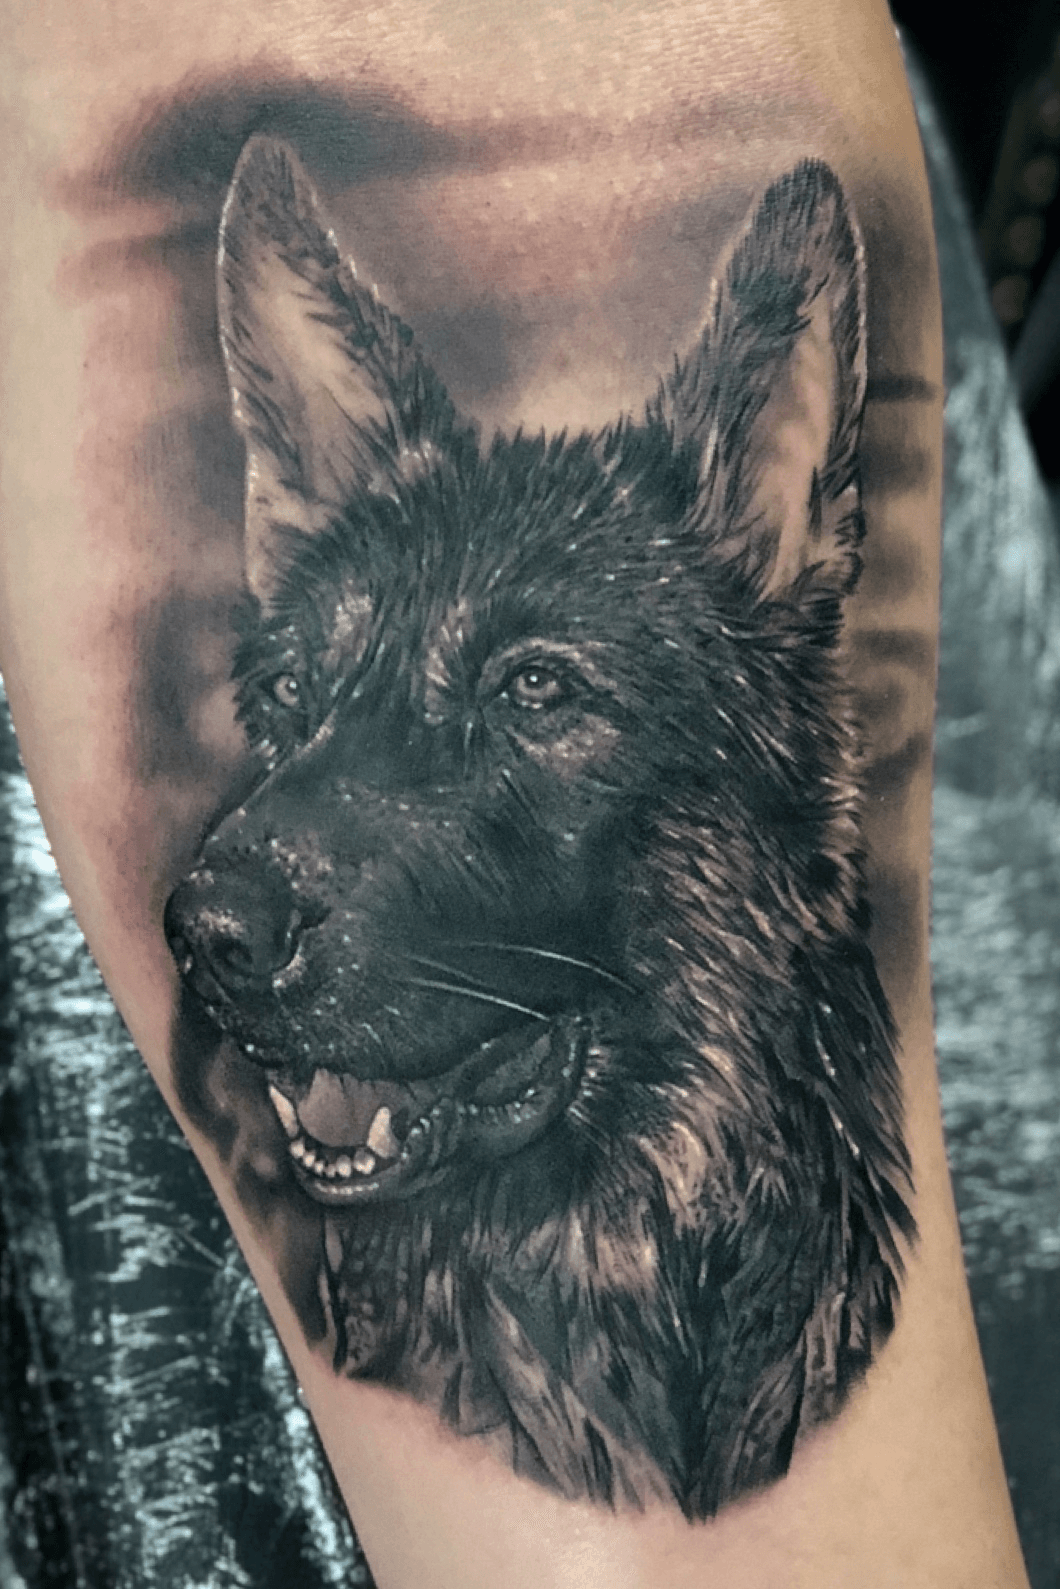 Mens Forearm Sleeve Shaded German Shepherd Memorial Tattoo Ideas  Best  sleeve tattoos German shepherd tattoo Dog memorial tattoos